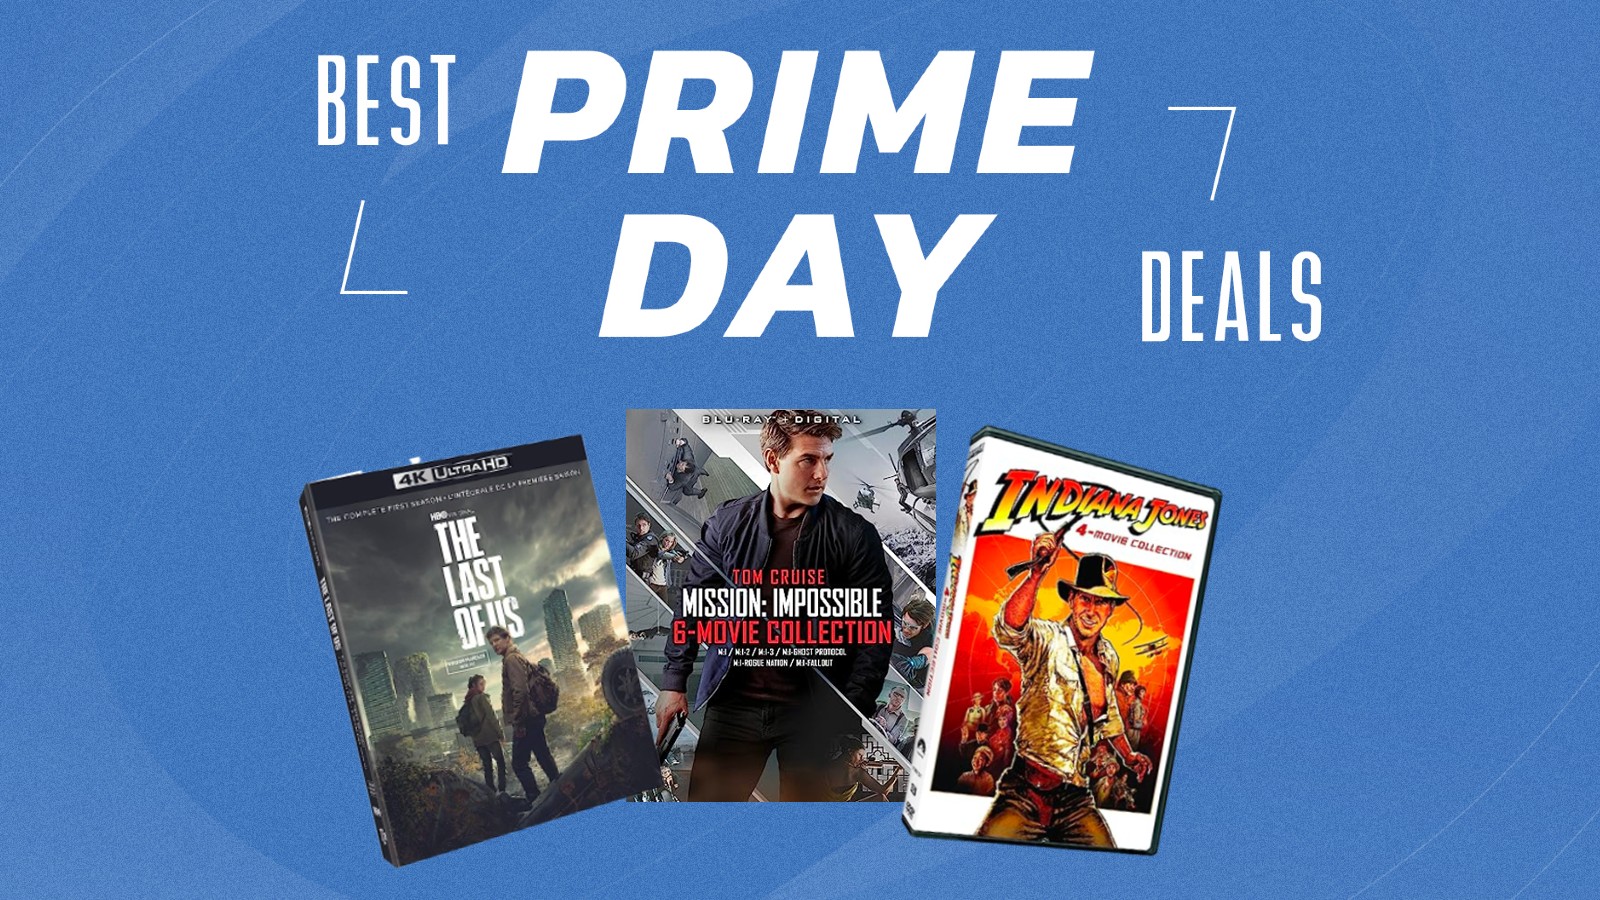 Το DVD, το Blu-ray και το 4K Ultra HD καλύπτουν για τους τελευταίους από εμάς, αποστολή: Impossible, και Indiana Jones, μερικές από τις καλύτερες προσφορές ταινιών Prime Day